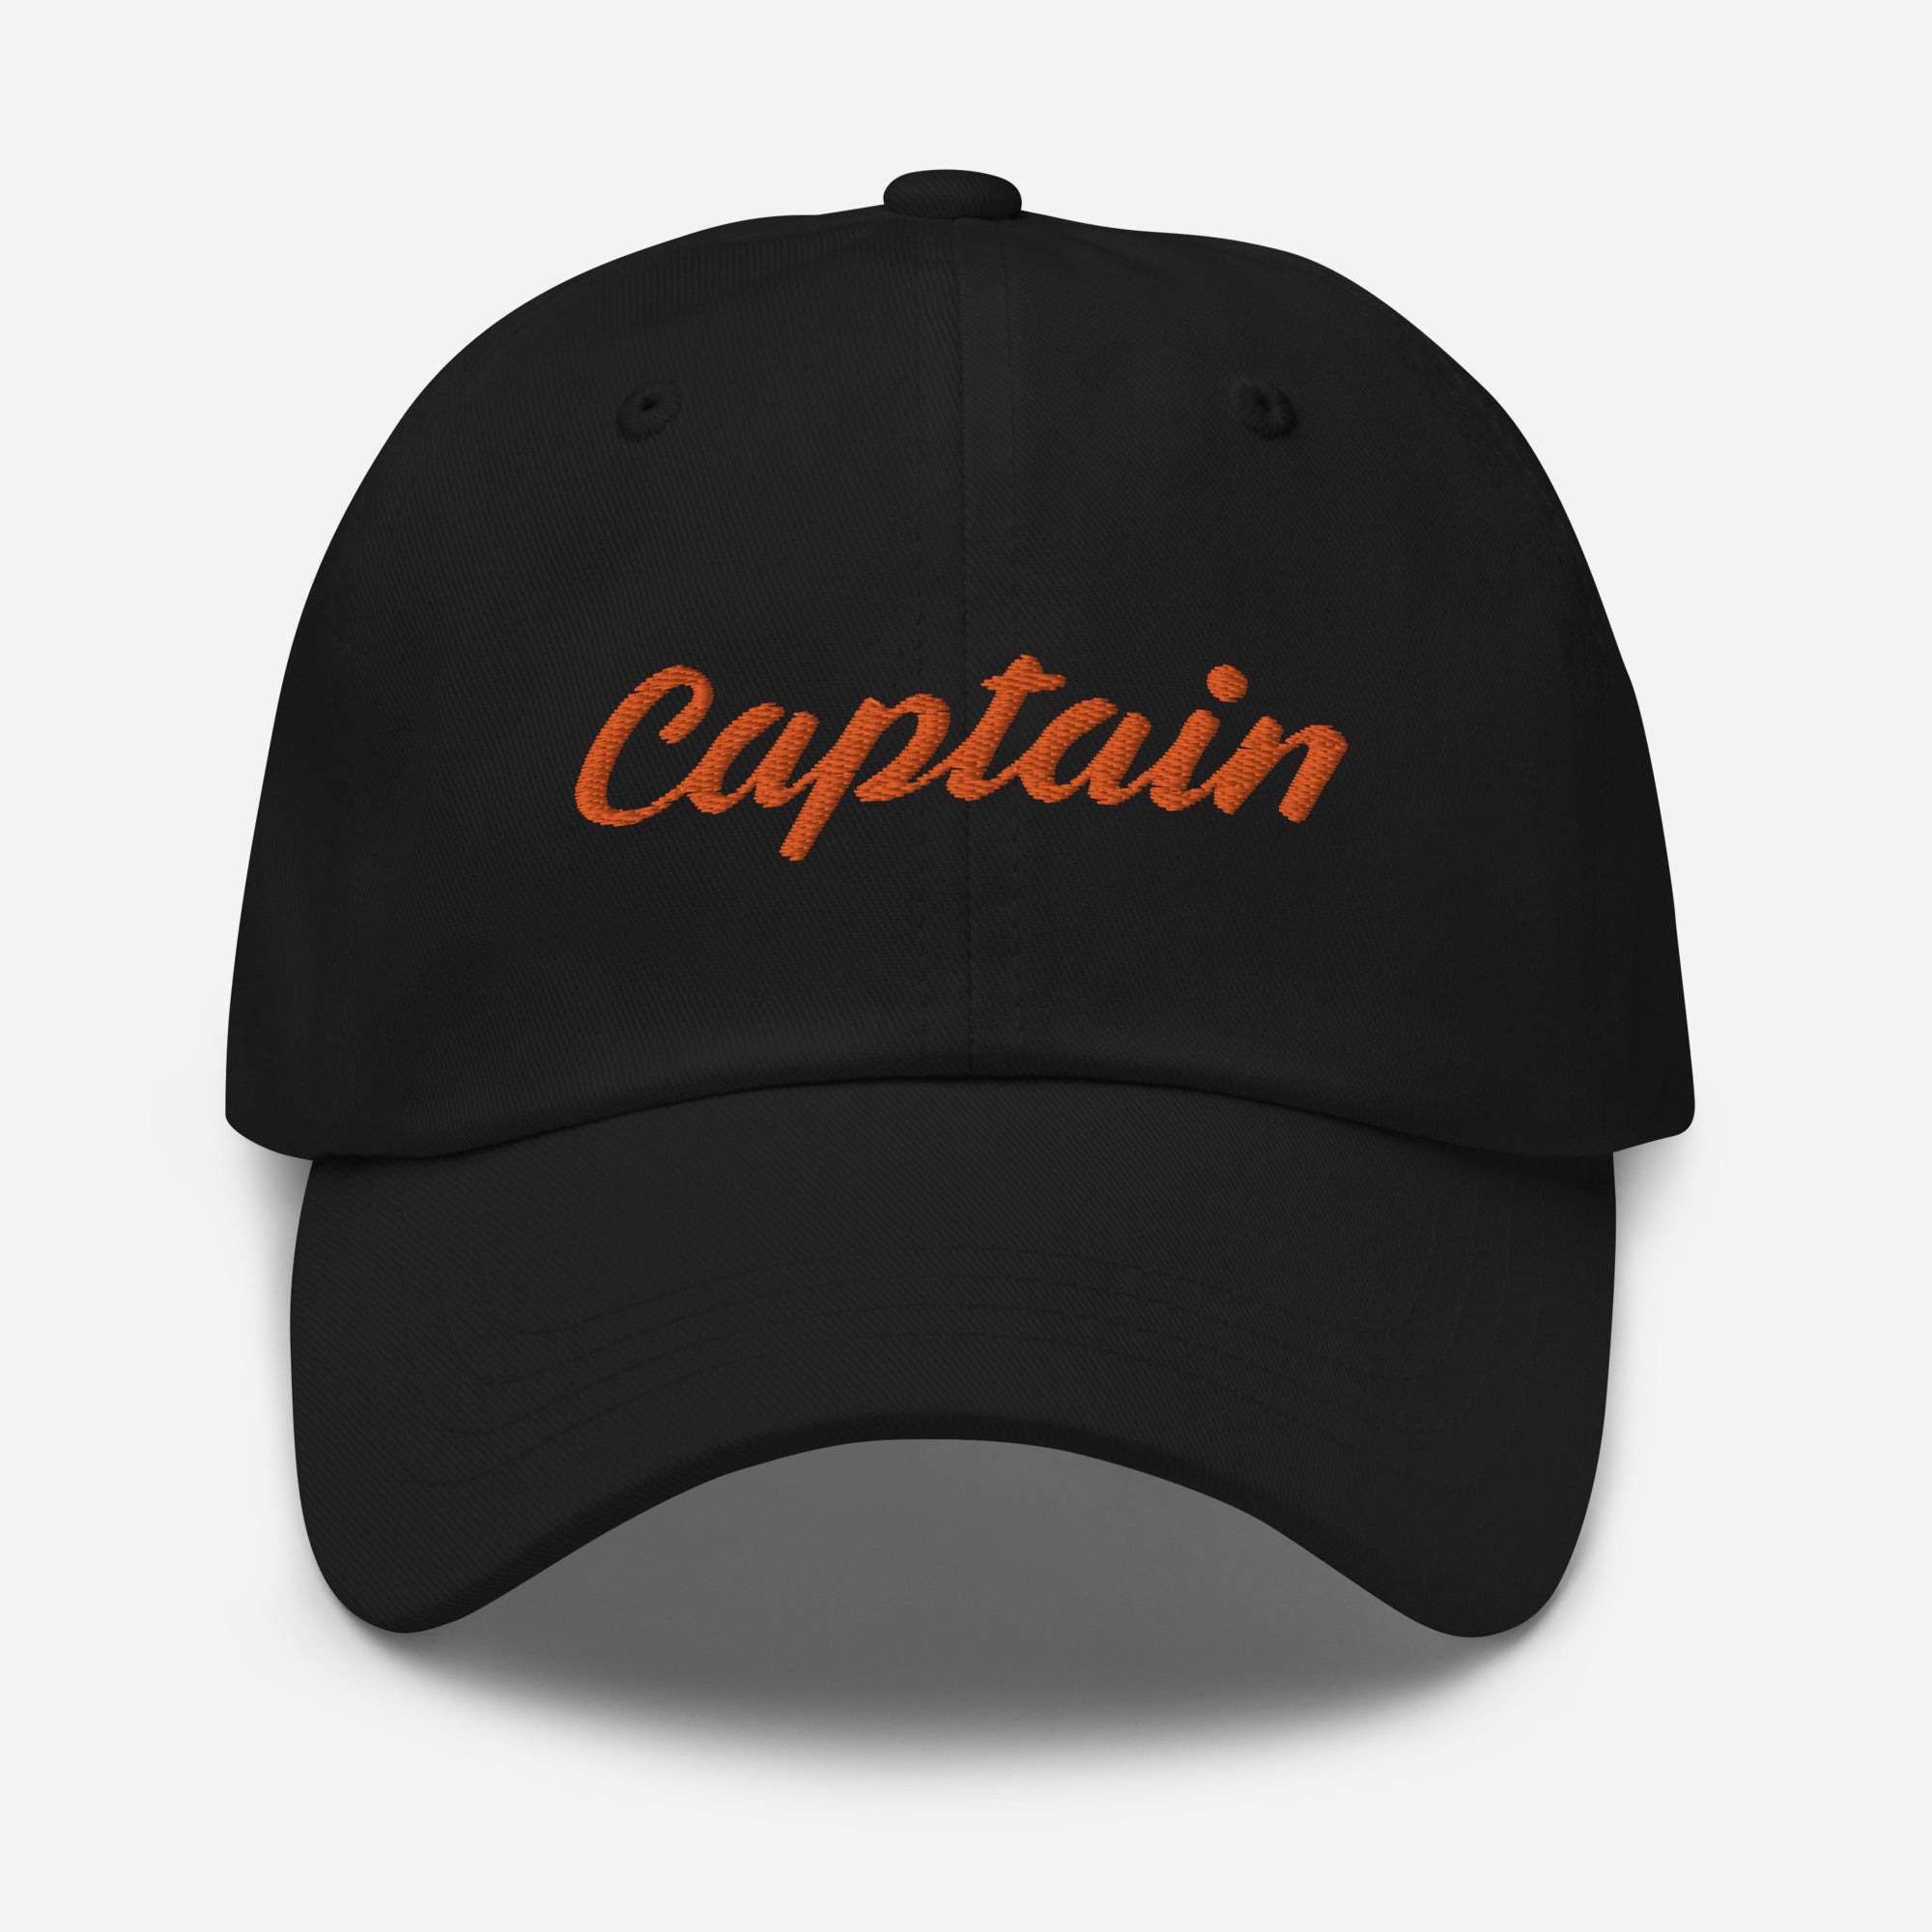 HATS & CAPS